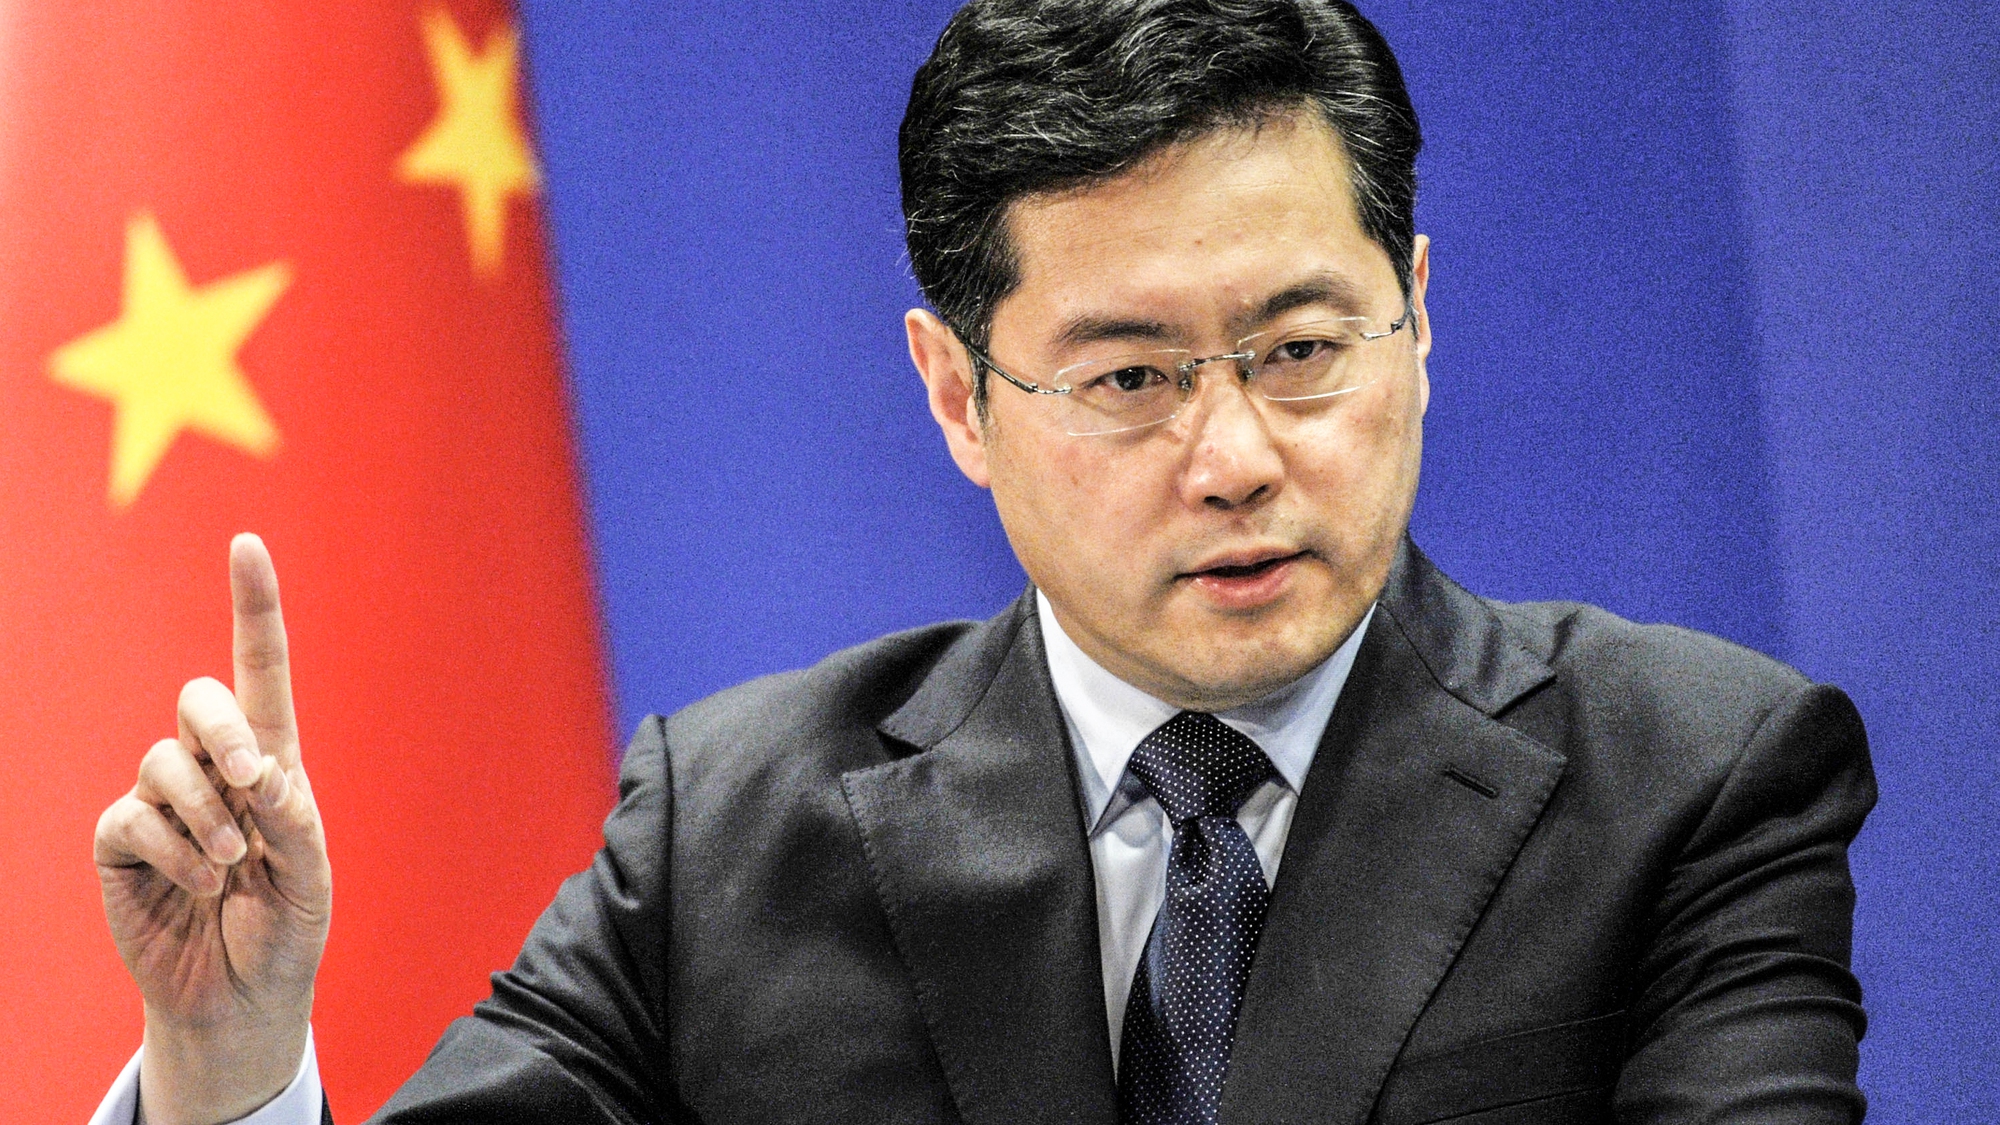 Phụ tá thân tín của Chủ tịch Tập Cận Bình được bổ nhiệm làm Ngoại trưởng Trung Quốc - Ảnh 1.